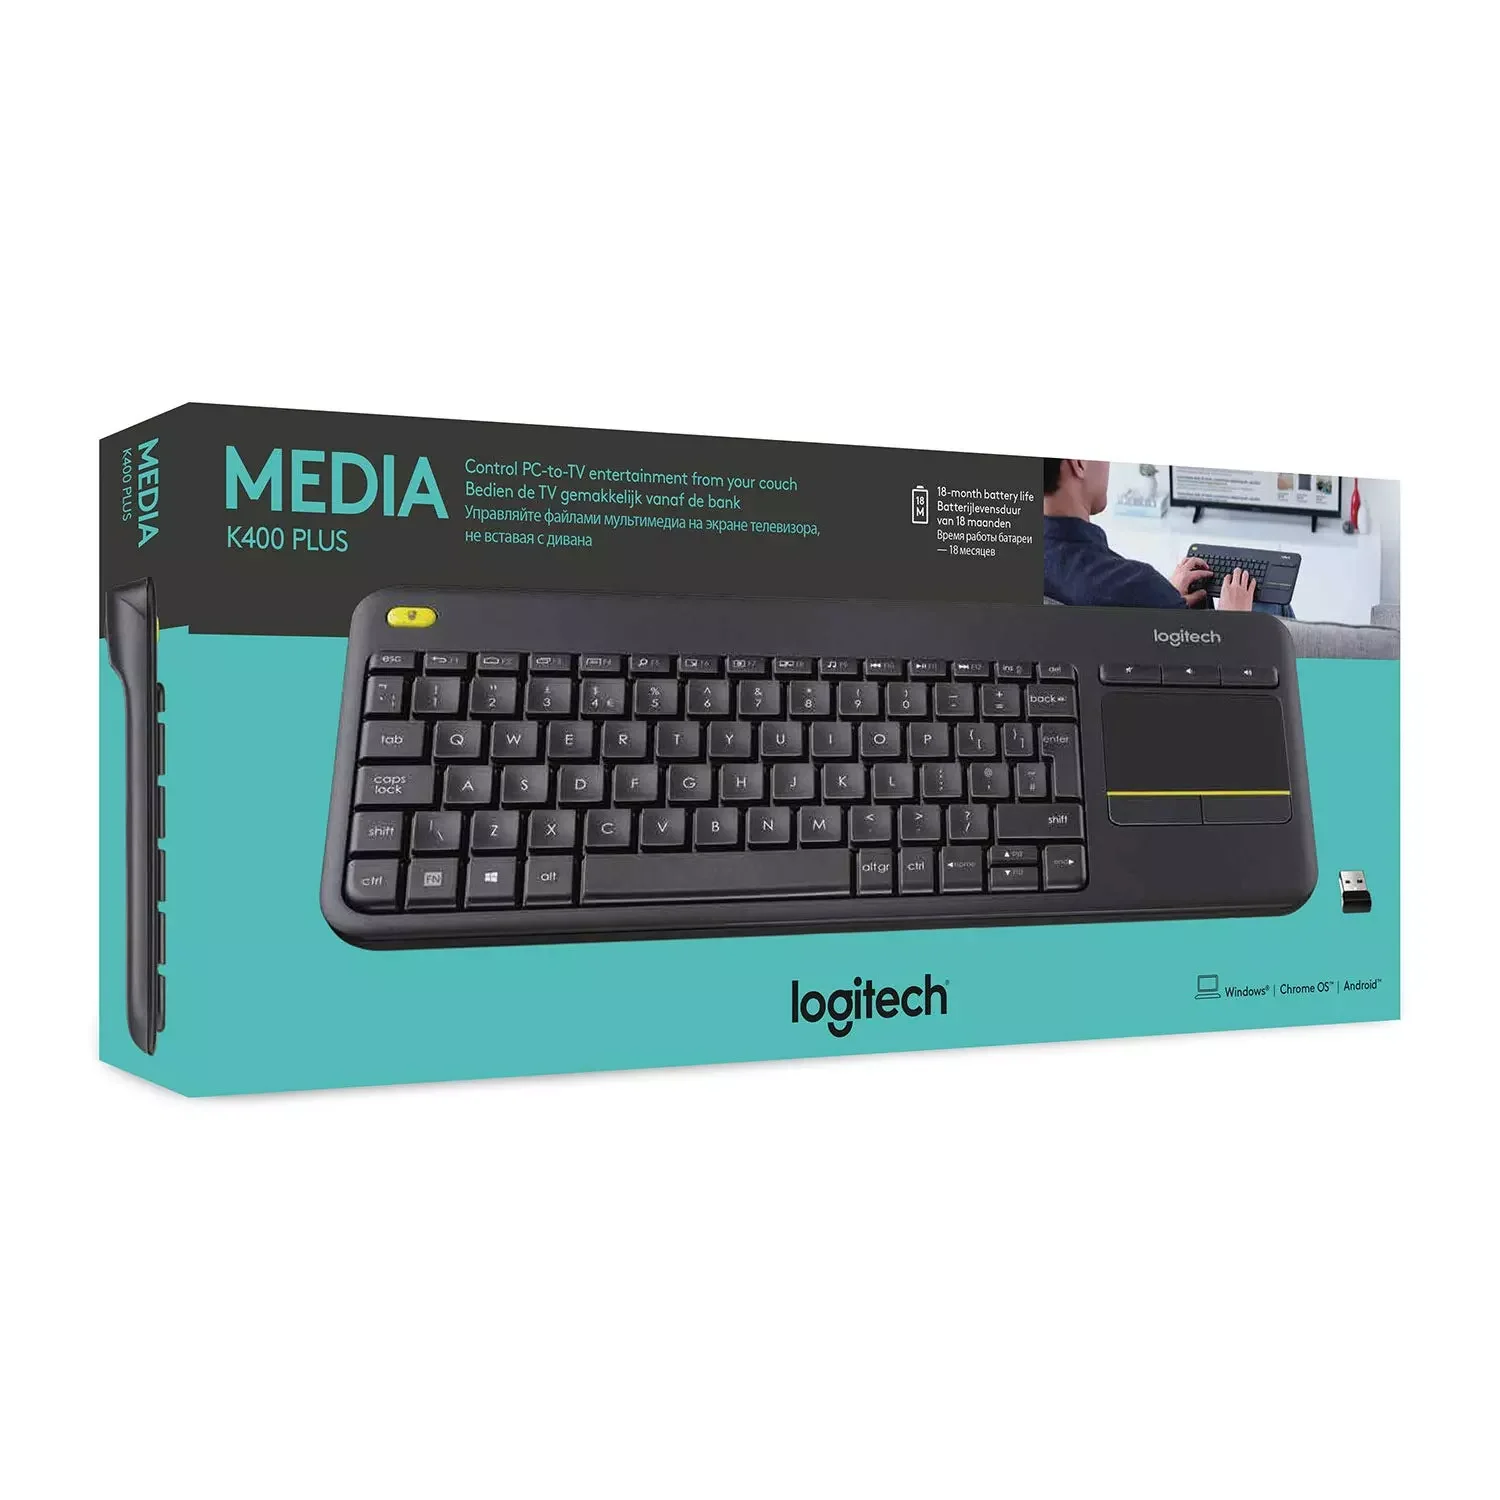 Logitech Wireless Touch Keyboard Plus With Built-in Touchpad - Buy Instrumental Keyboard,Logitech K400plus Keyboard,Foldable Keyboard Product on Alibaba.com